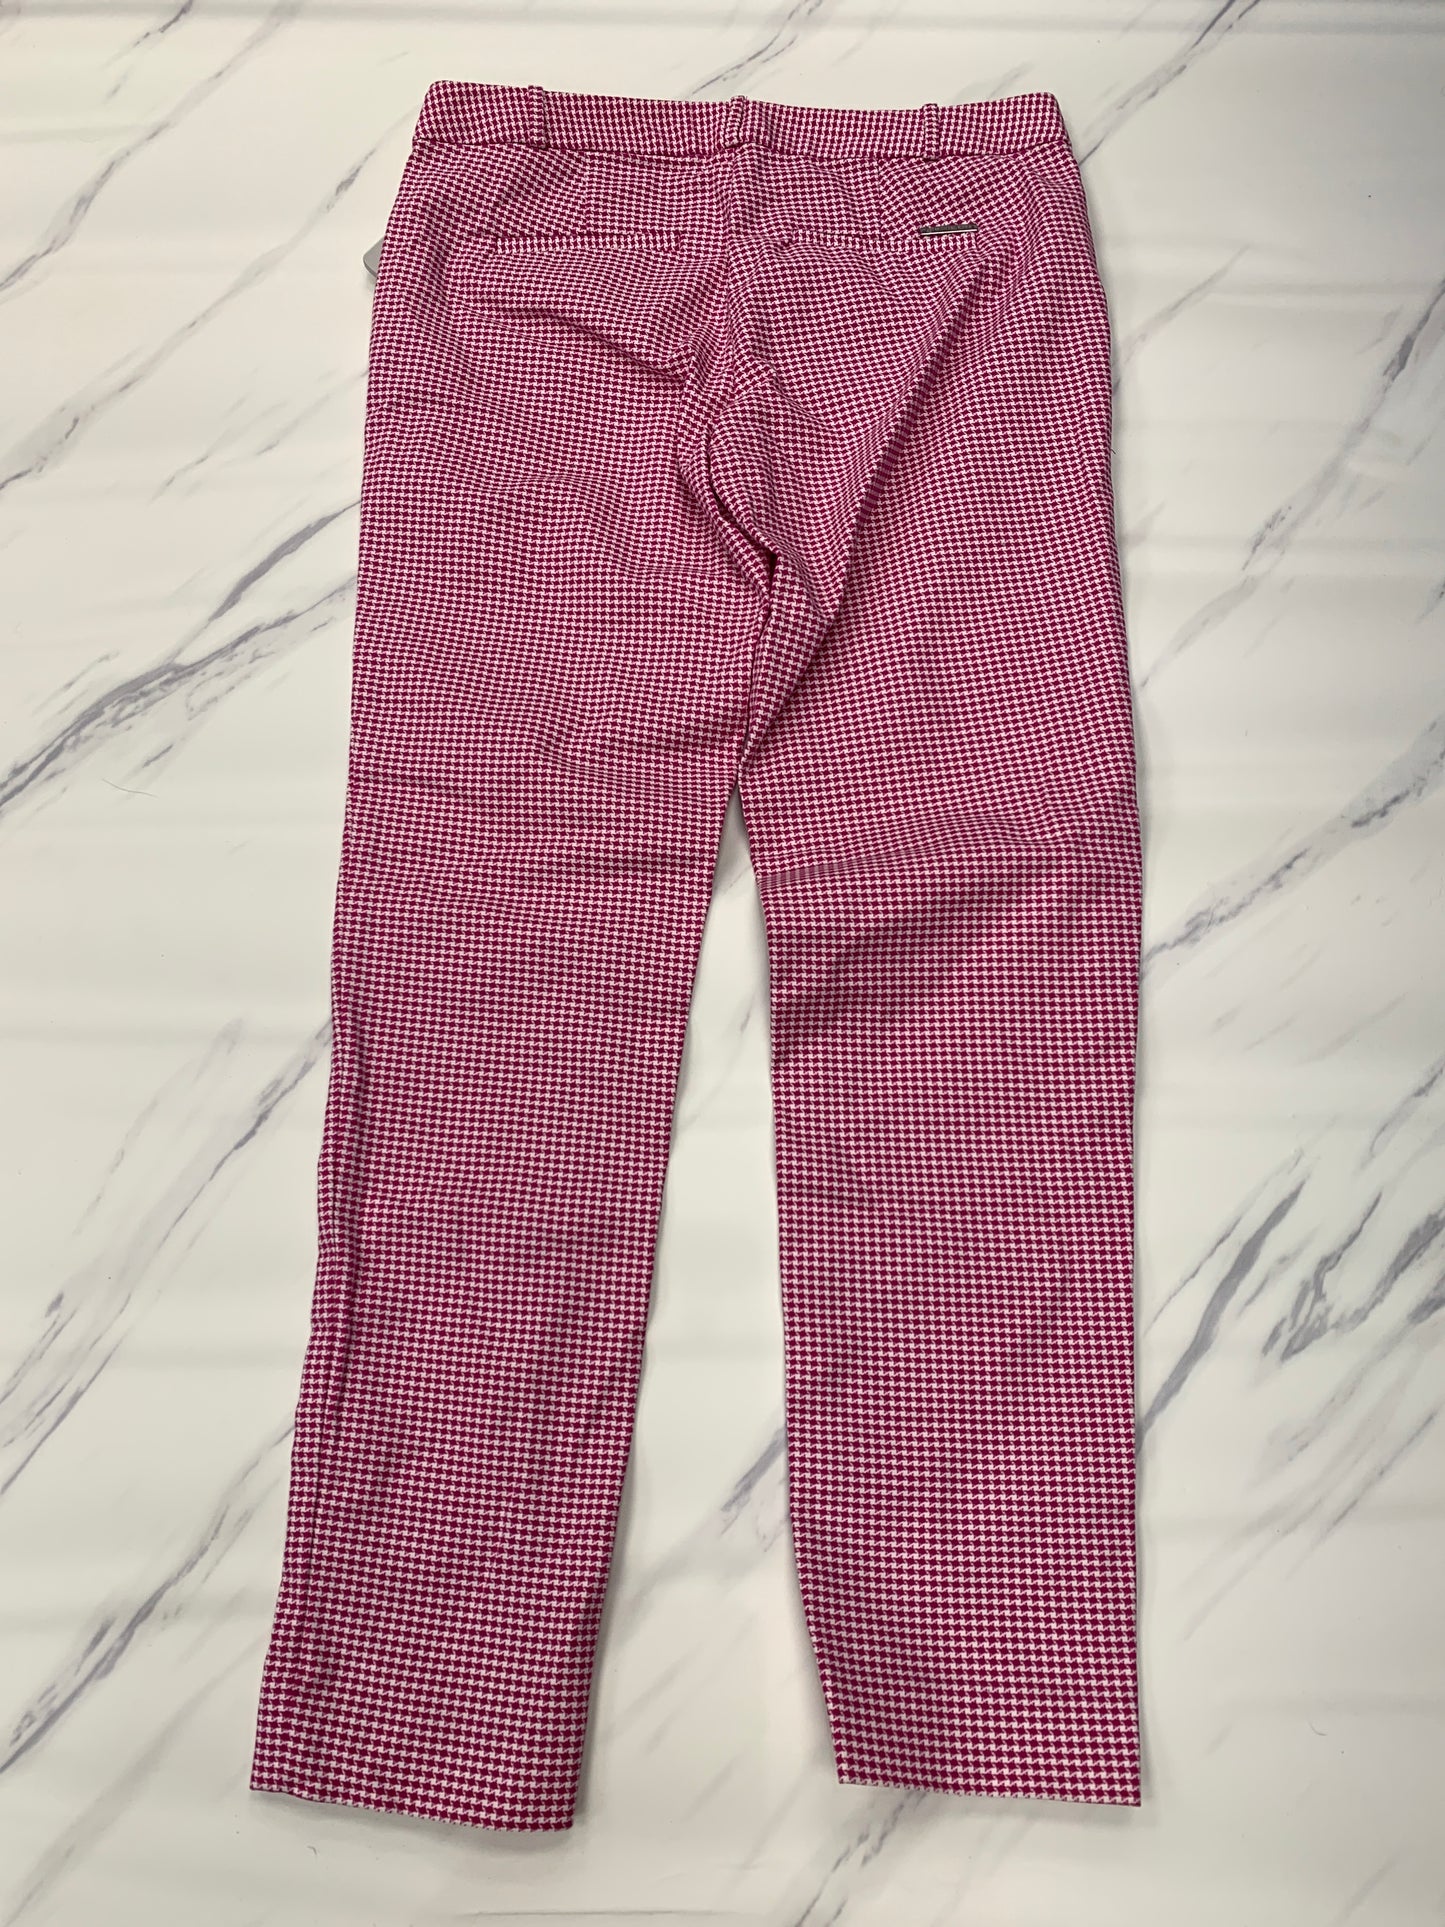 Pants Dress By Michael By Michael Kors  Size: 4